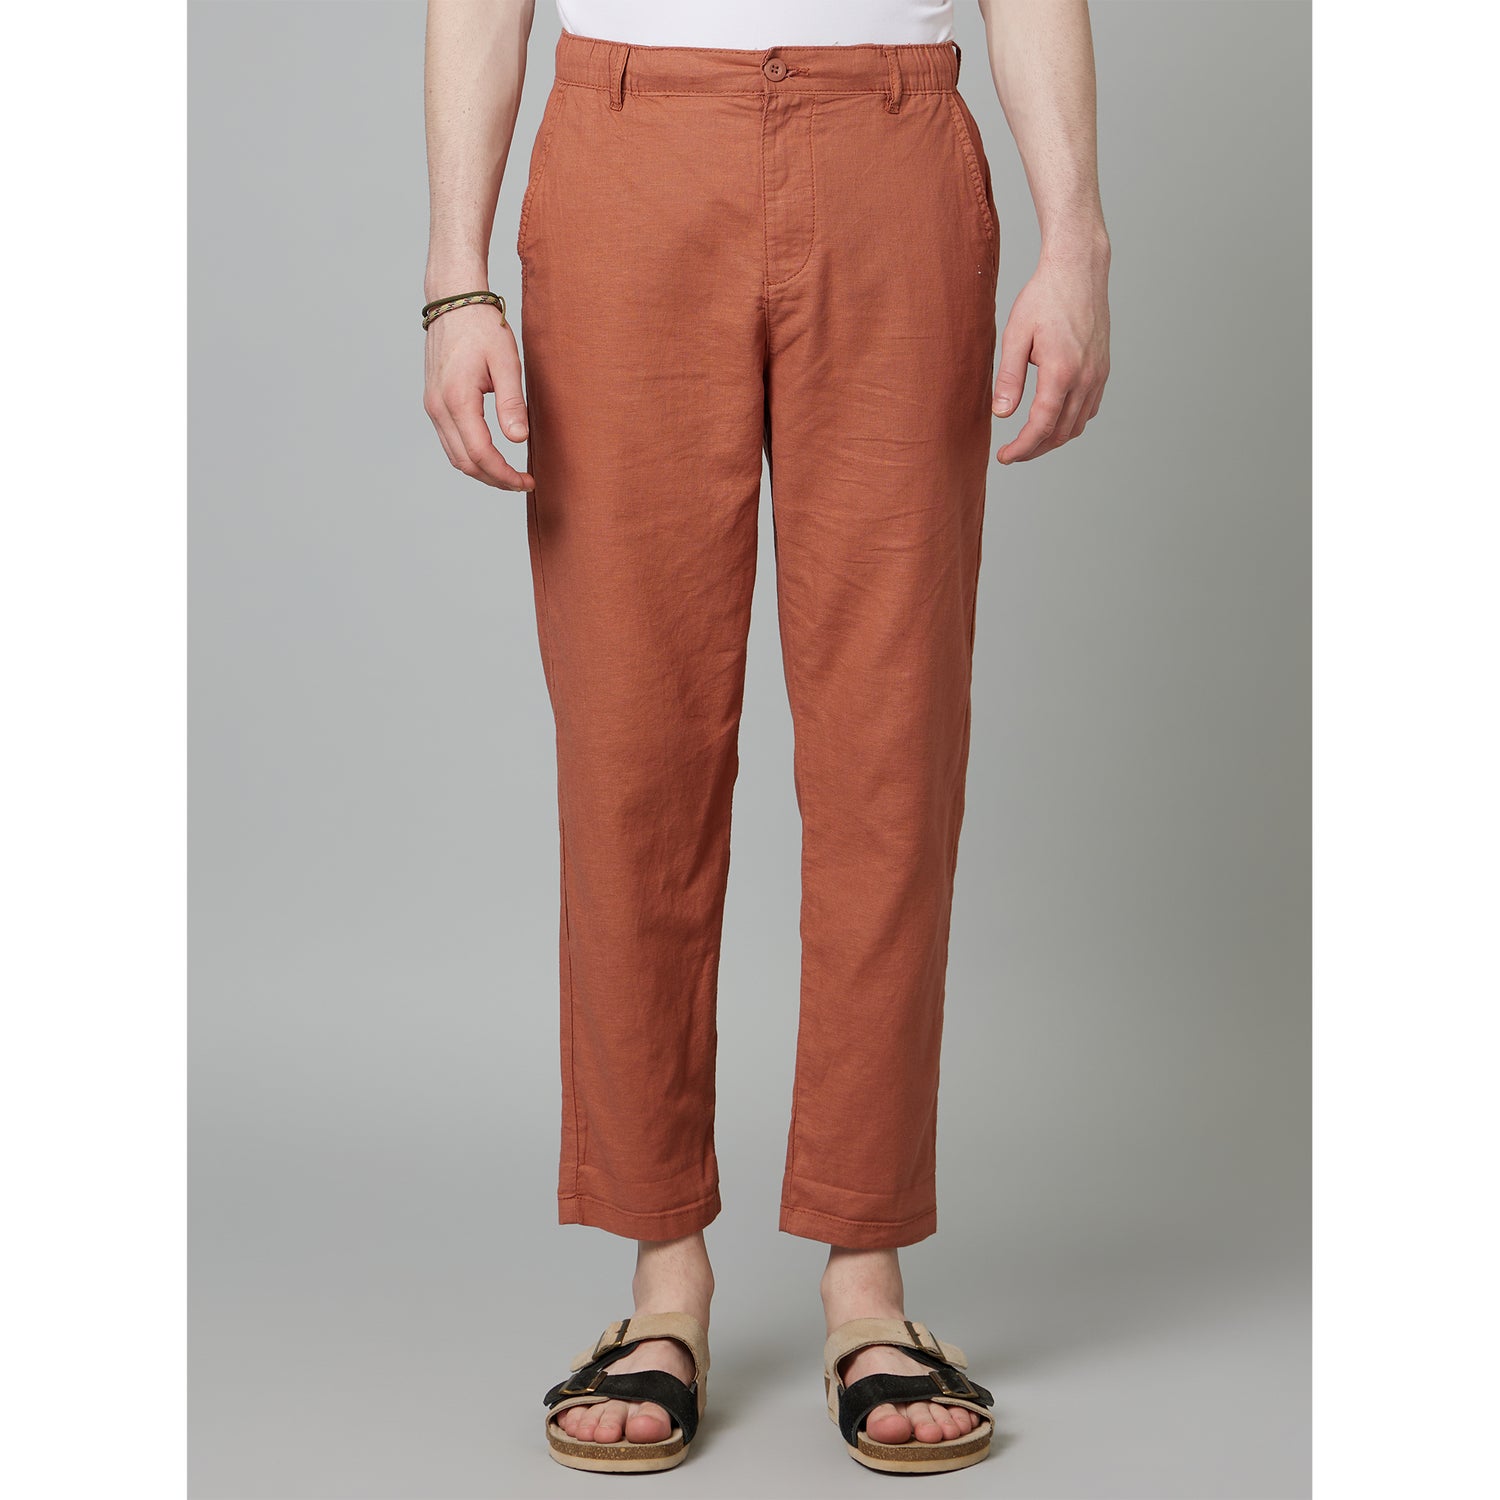 Rust Mid Rise Plain Cotton Slim Fit Trousers (DOLINCO)